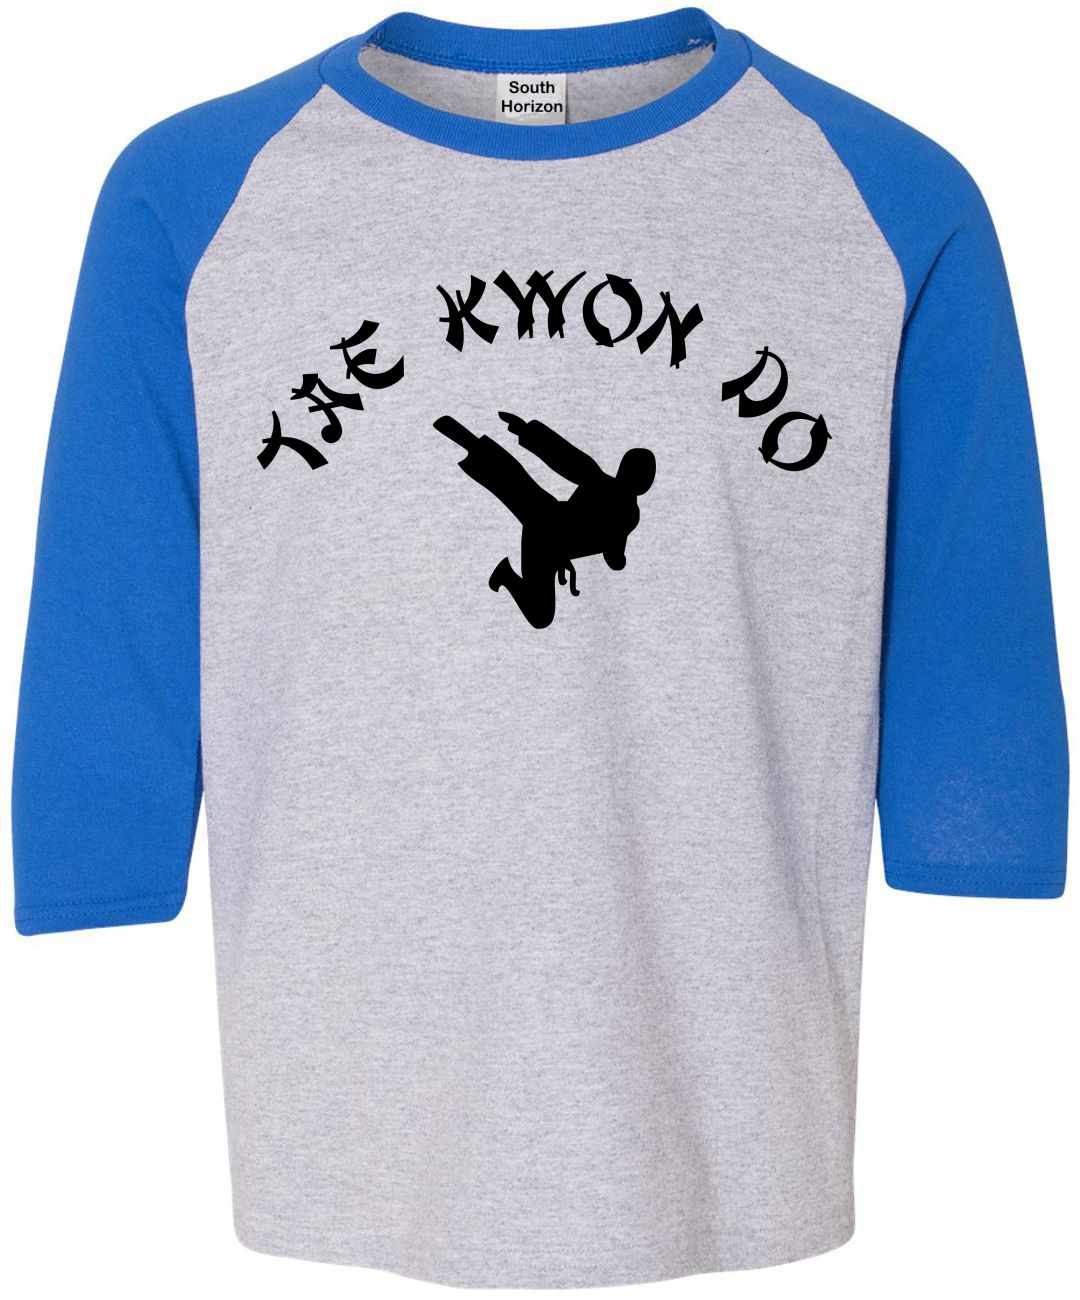 TAE KWON DO on Youth Baseball Shirt (#748-212)